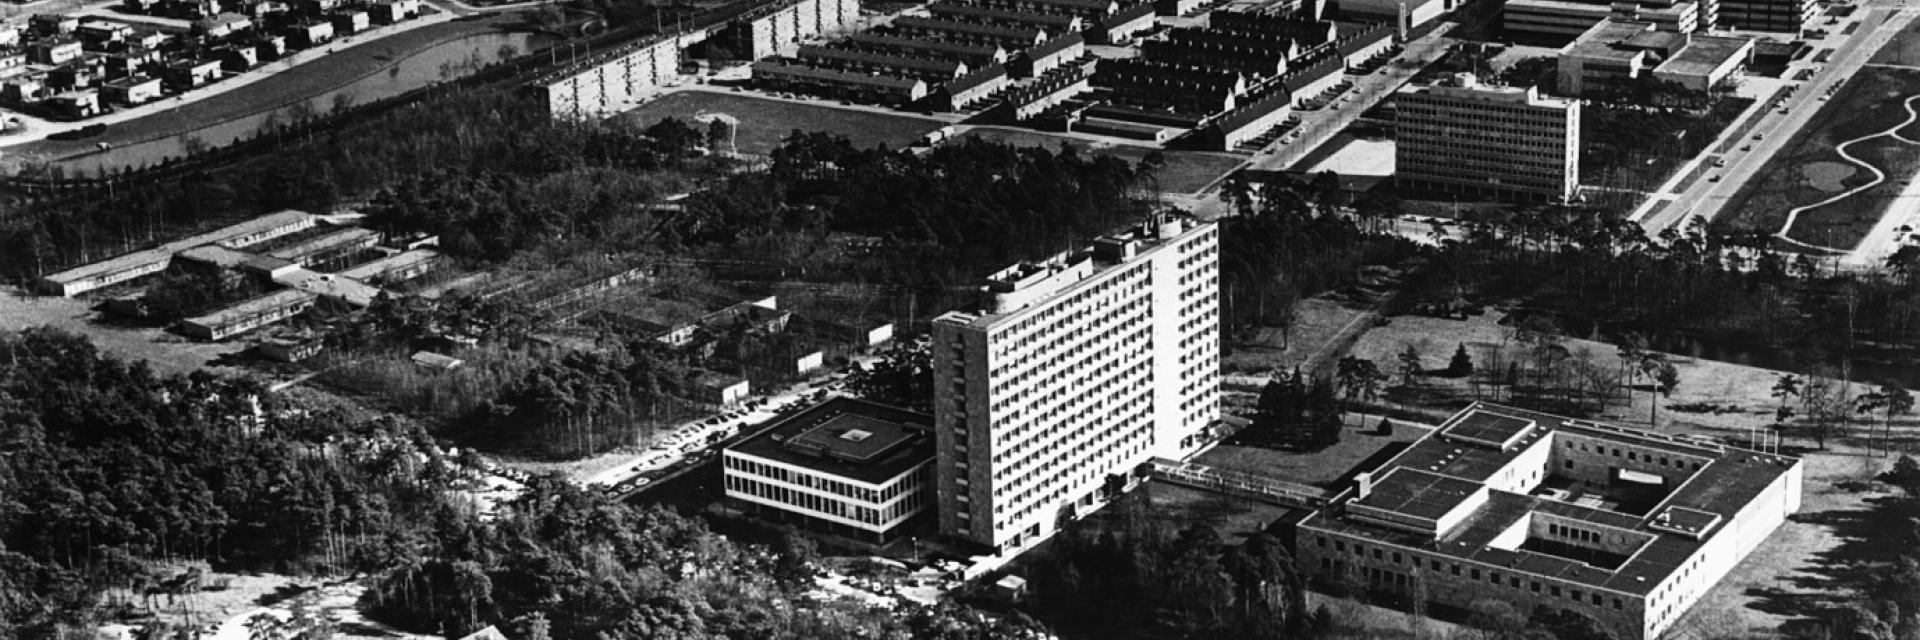 Campus 1974